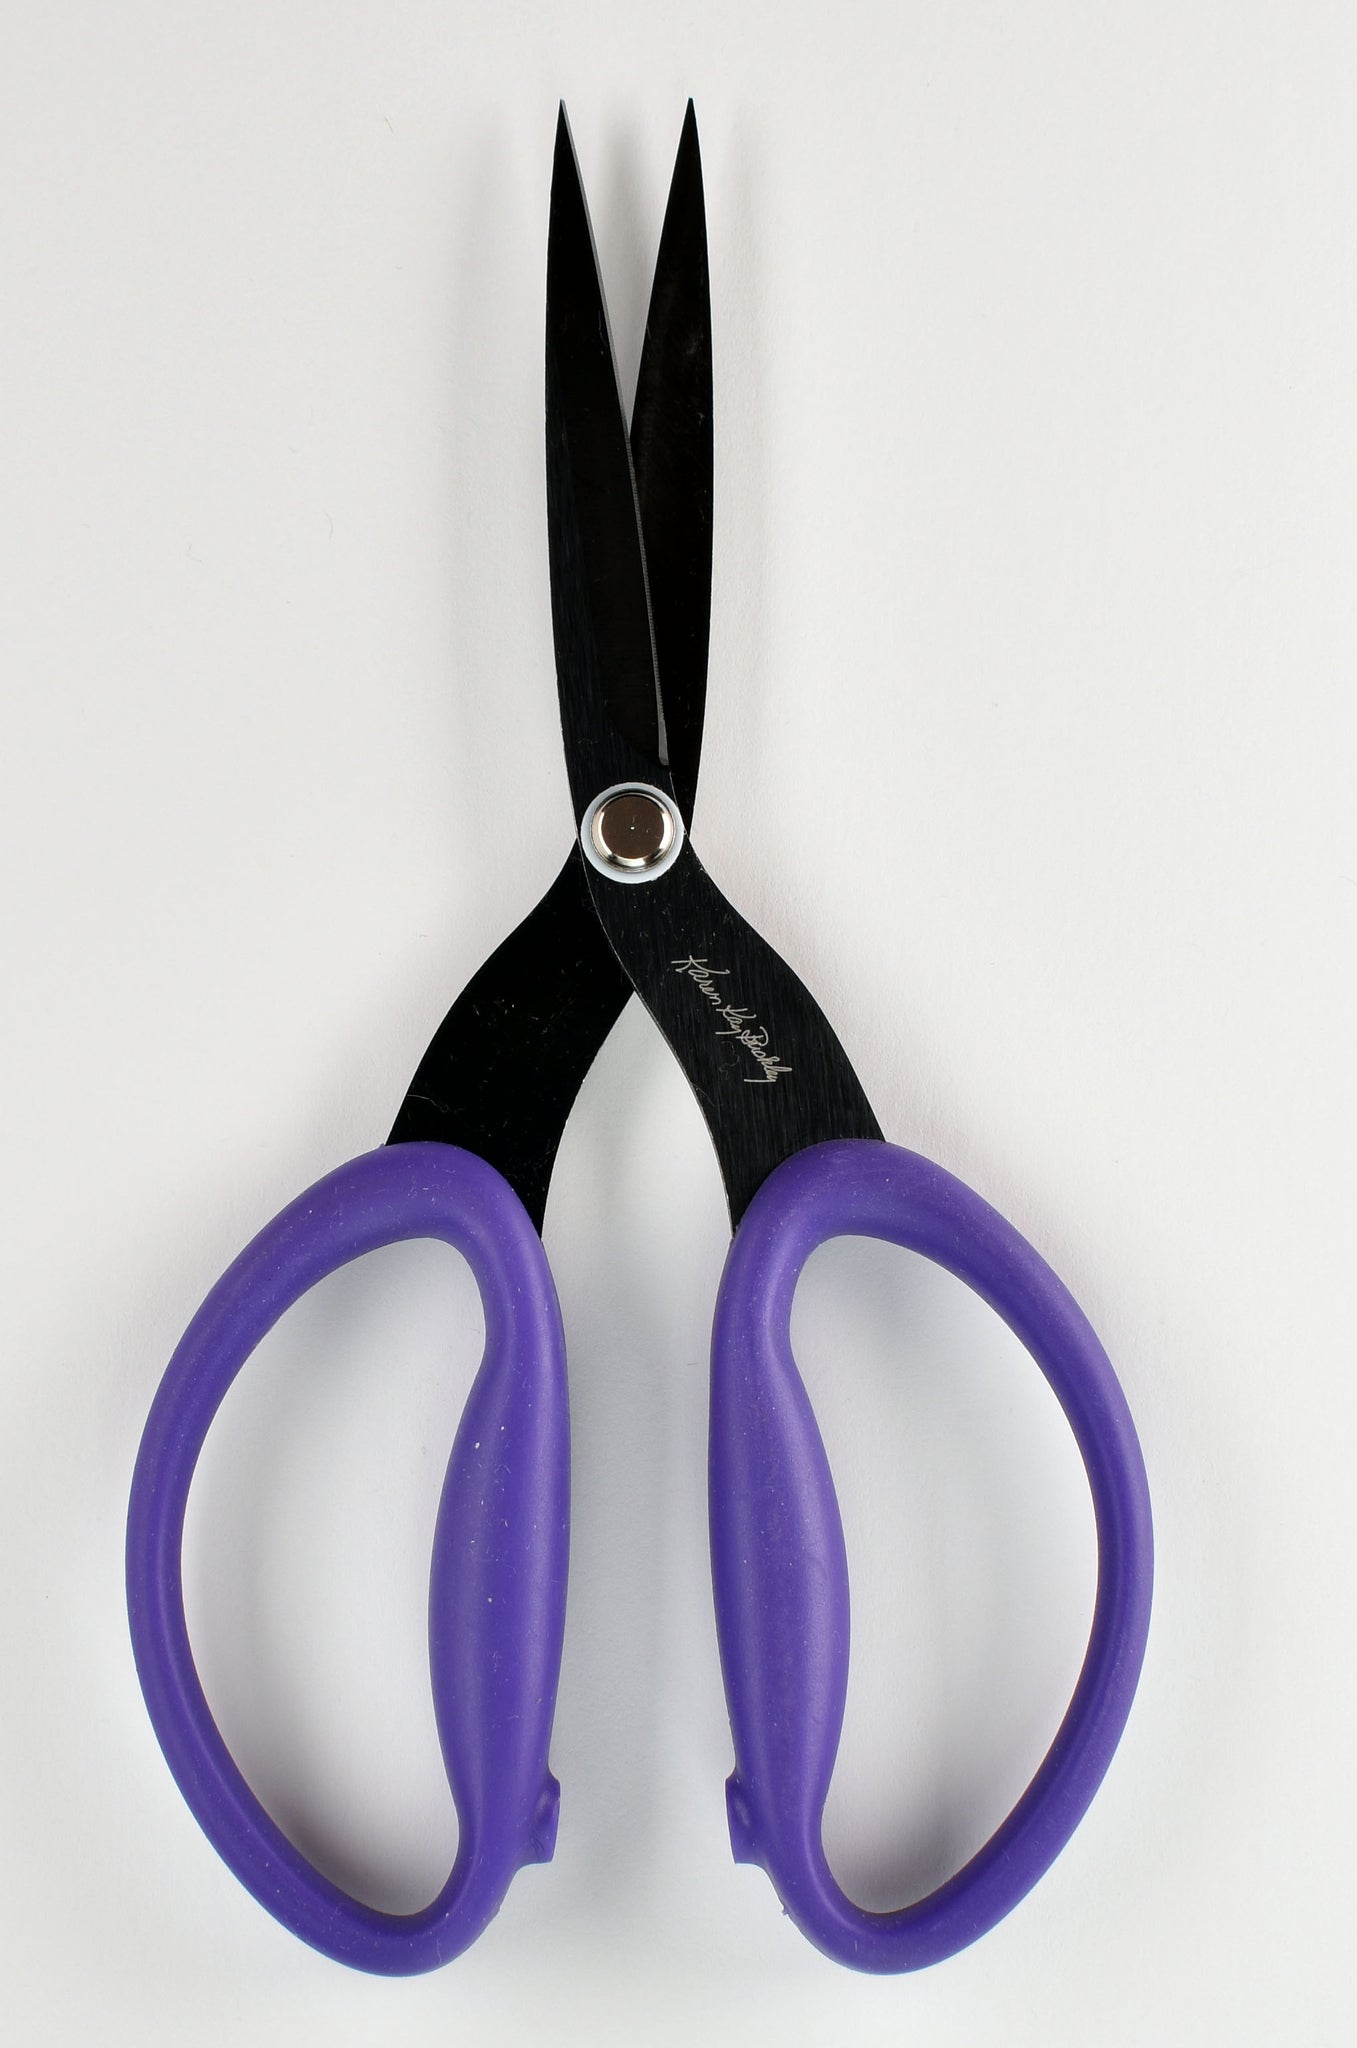  Karen Kay Buckley Perfect Scissors, Purple